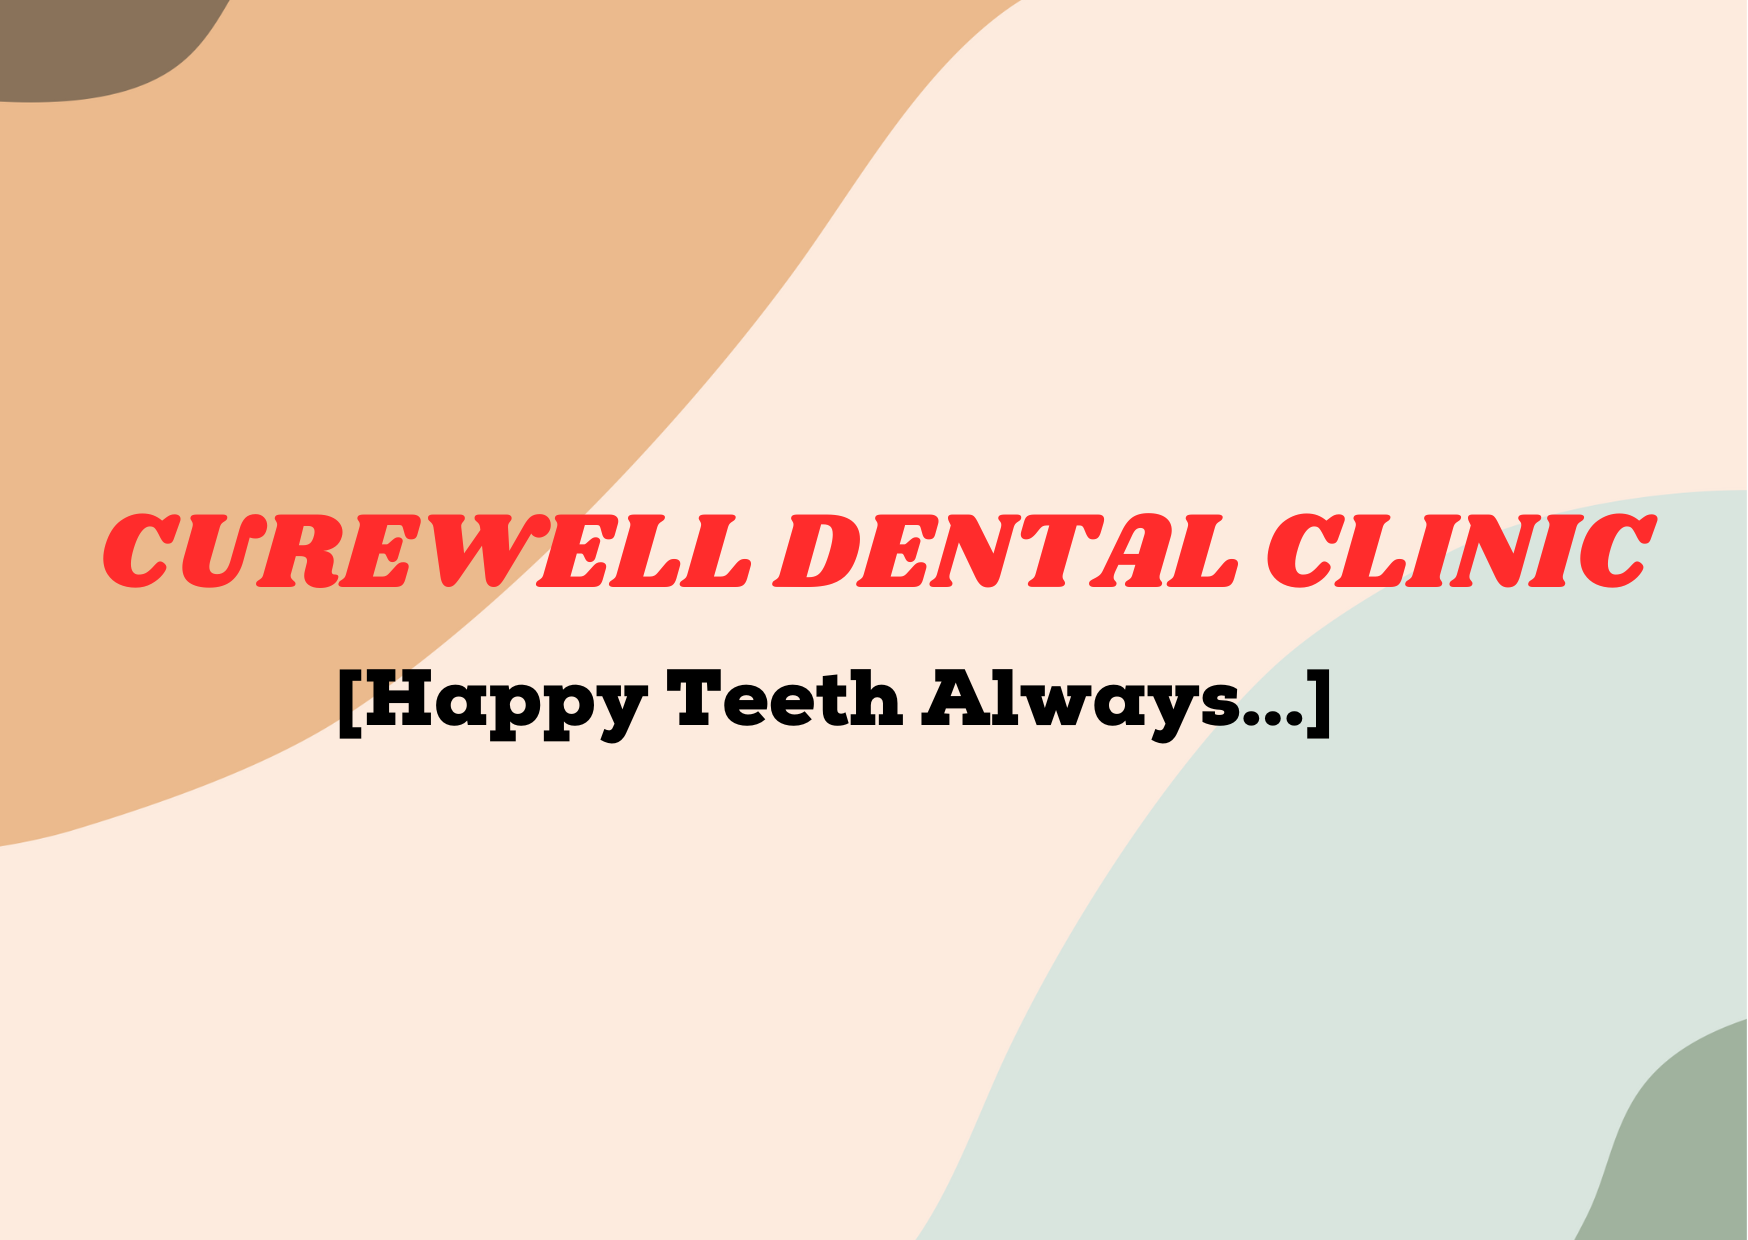 Curewell Dental Clinic 